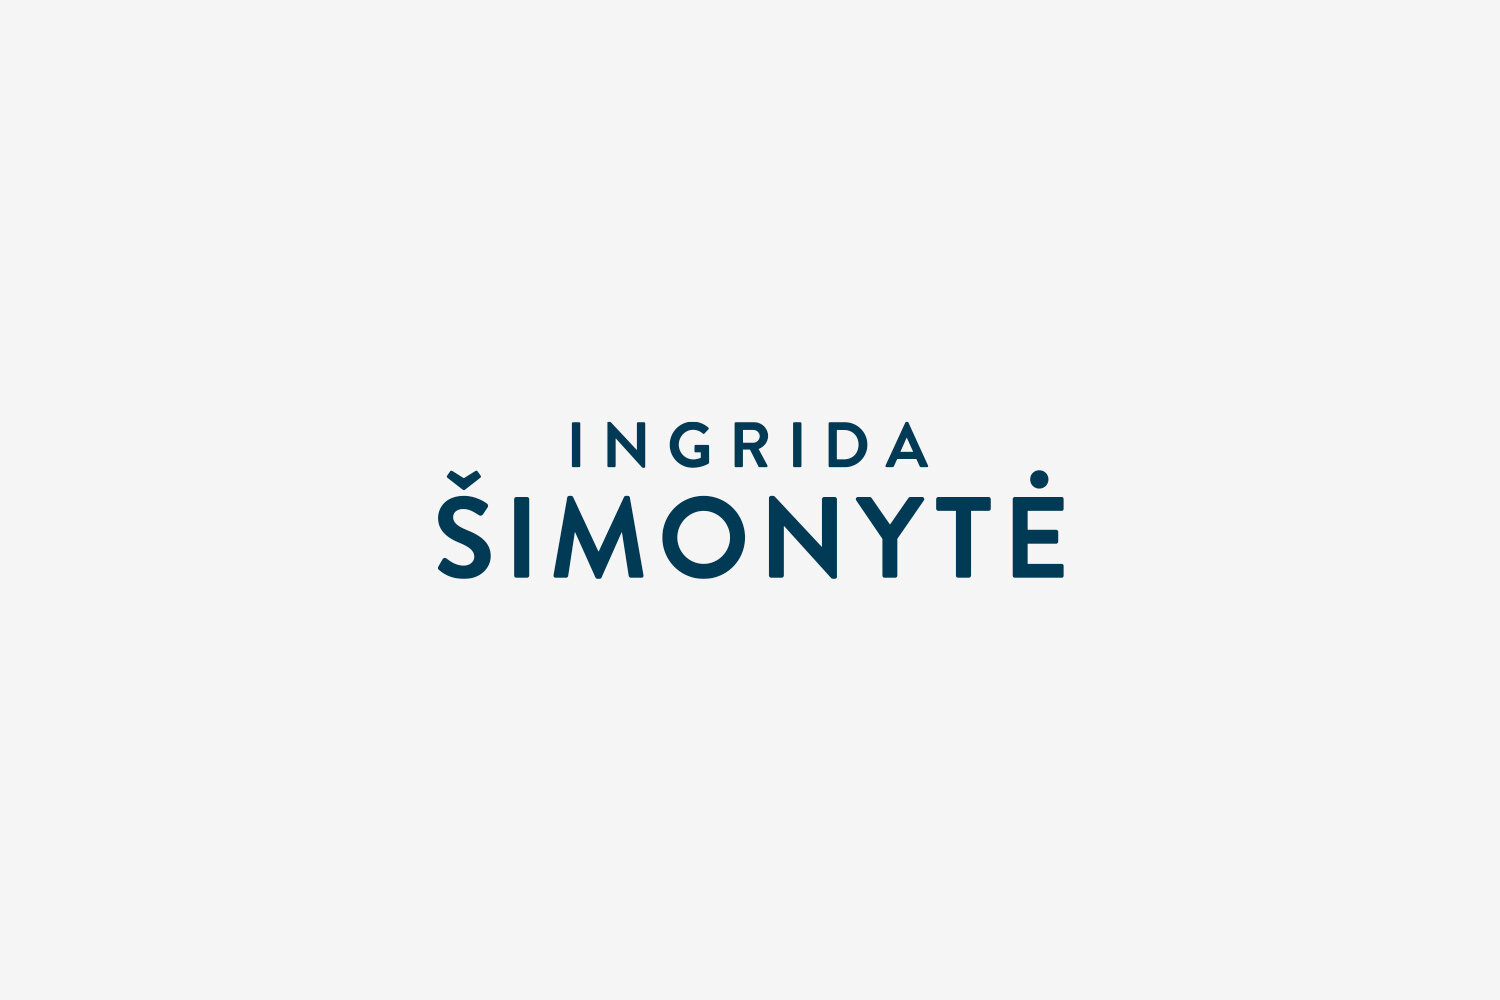 Ingrida_simonyte_prettymuchagency_logo_official.jpg